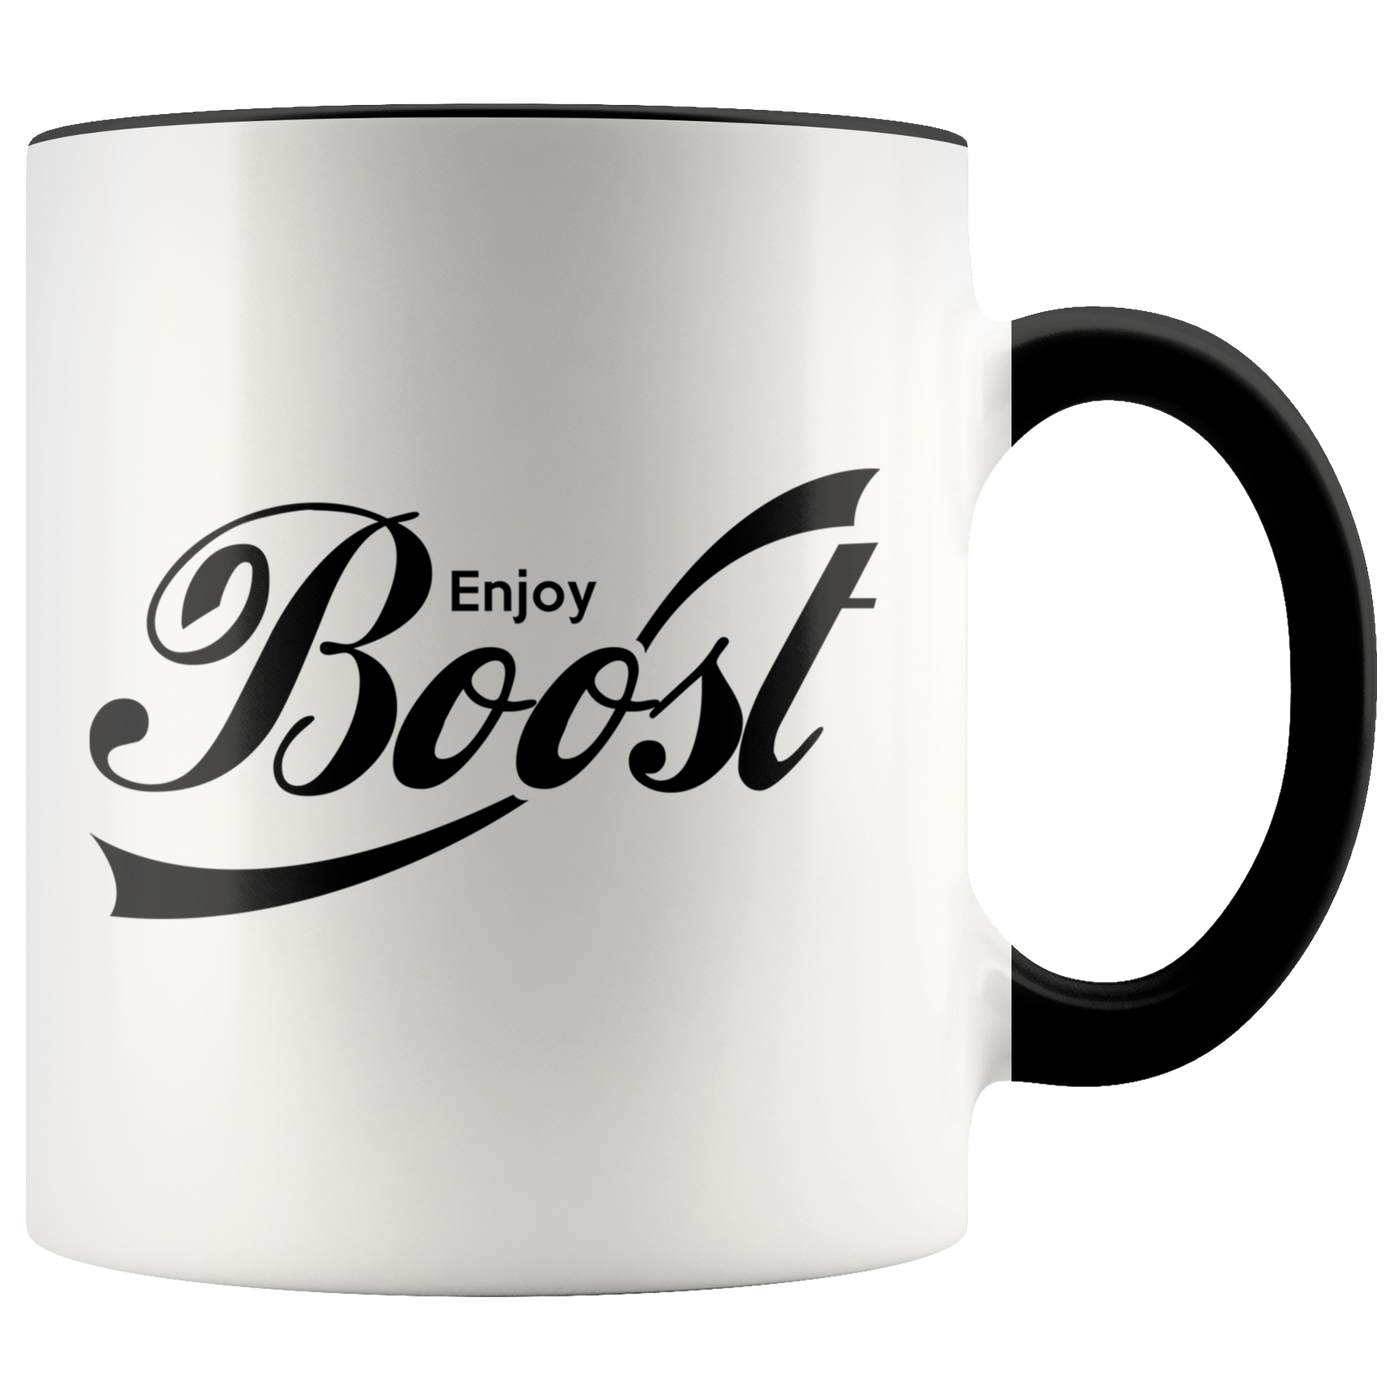 Enjoy Boost Mug